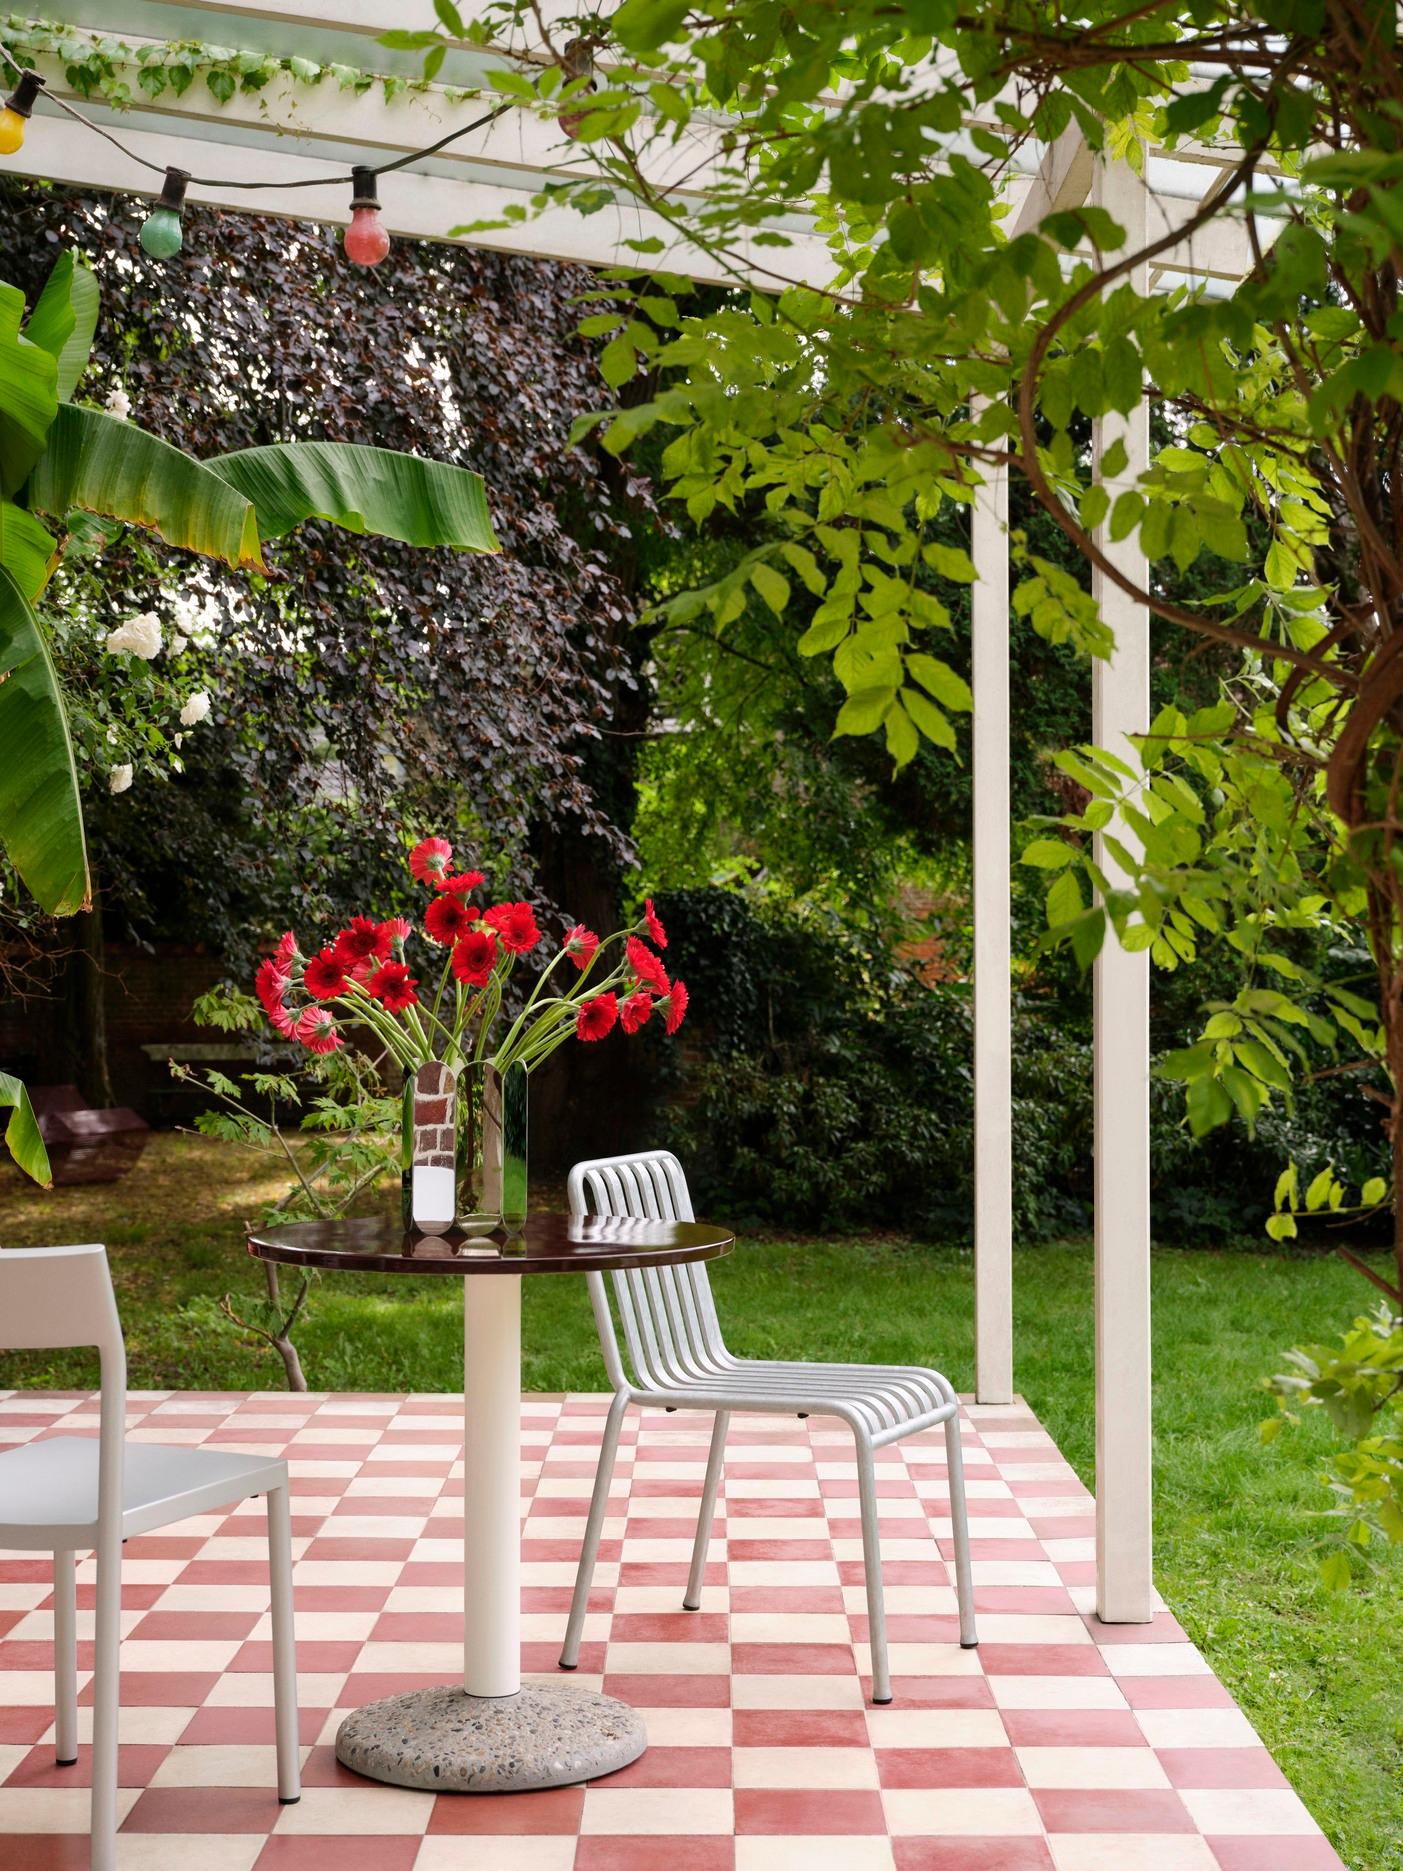 La collaboration fructueuse entre HAY et Muller Van Severen se poursuit avec la Ceramic Table - une table d'extérieur caractérisée par l'expression minimaliste caractéristique des designers combinée à leur utilisation audacieuse de la couleur. 
La